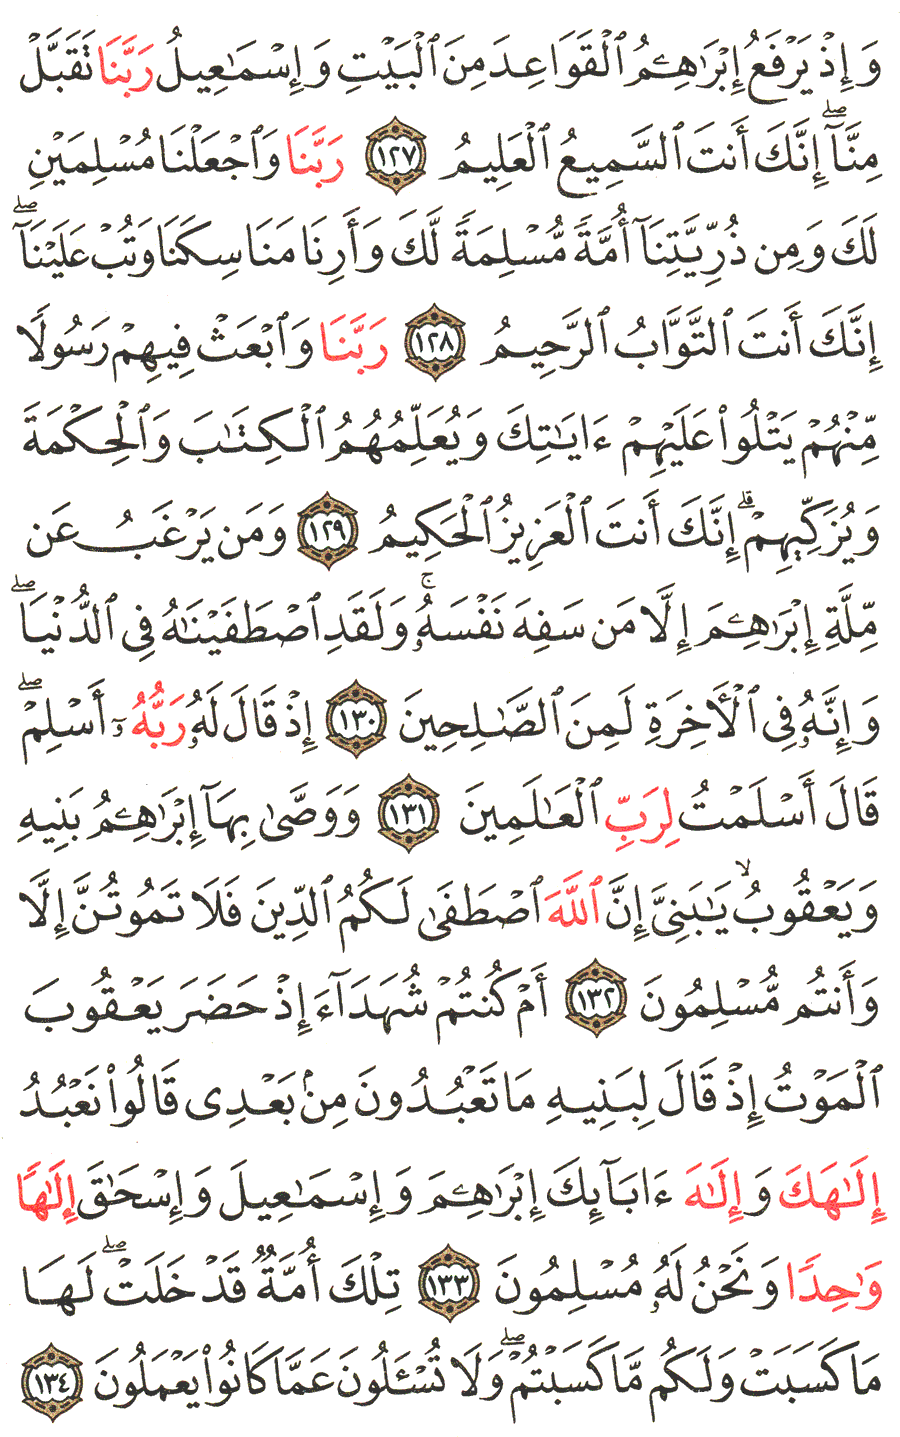 الصفحة رقم  20 من القرآن الكريم مكتوبة من المصحف